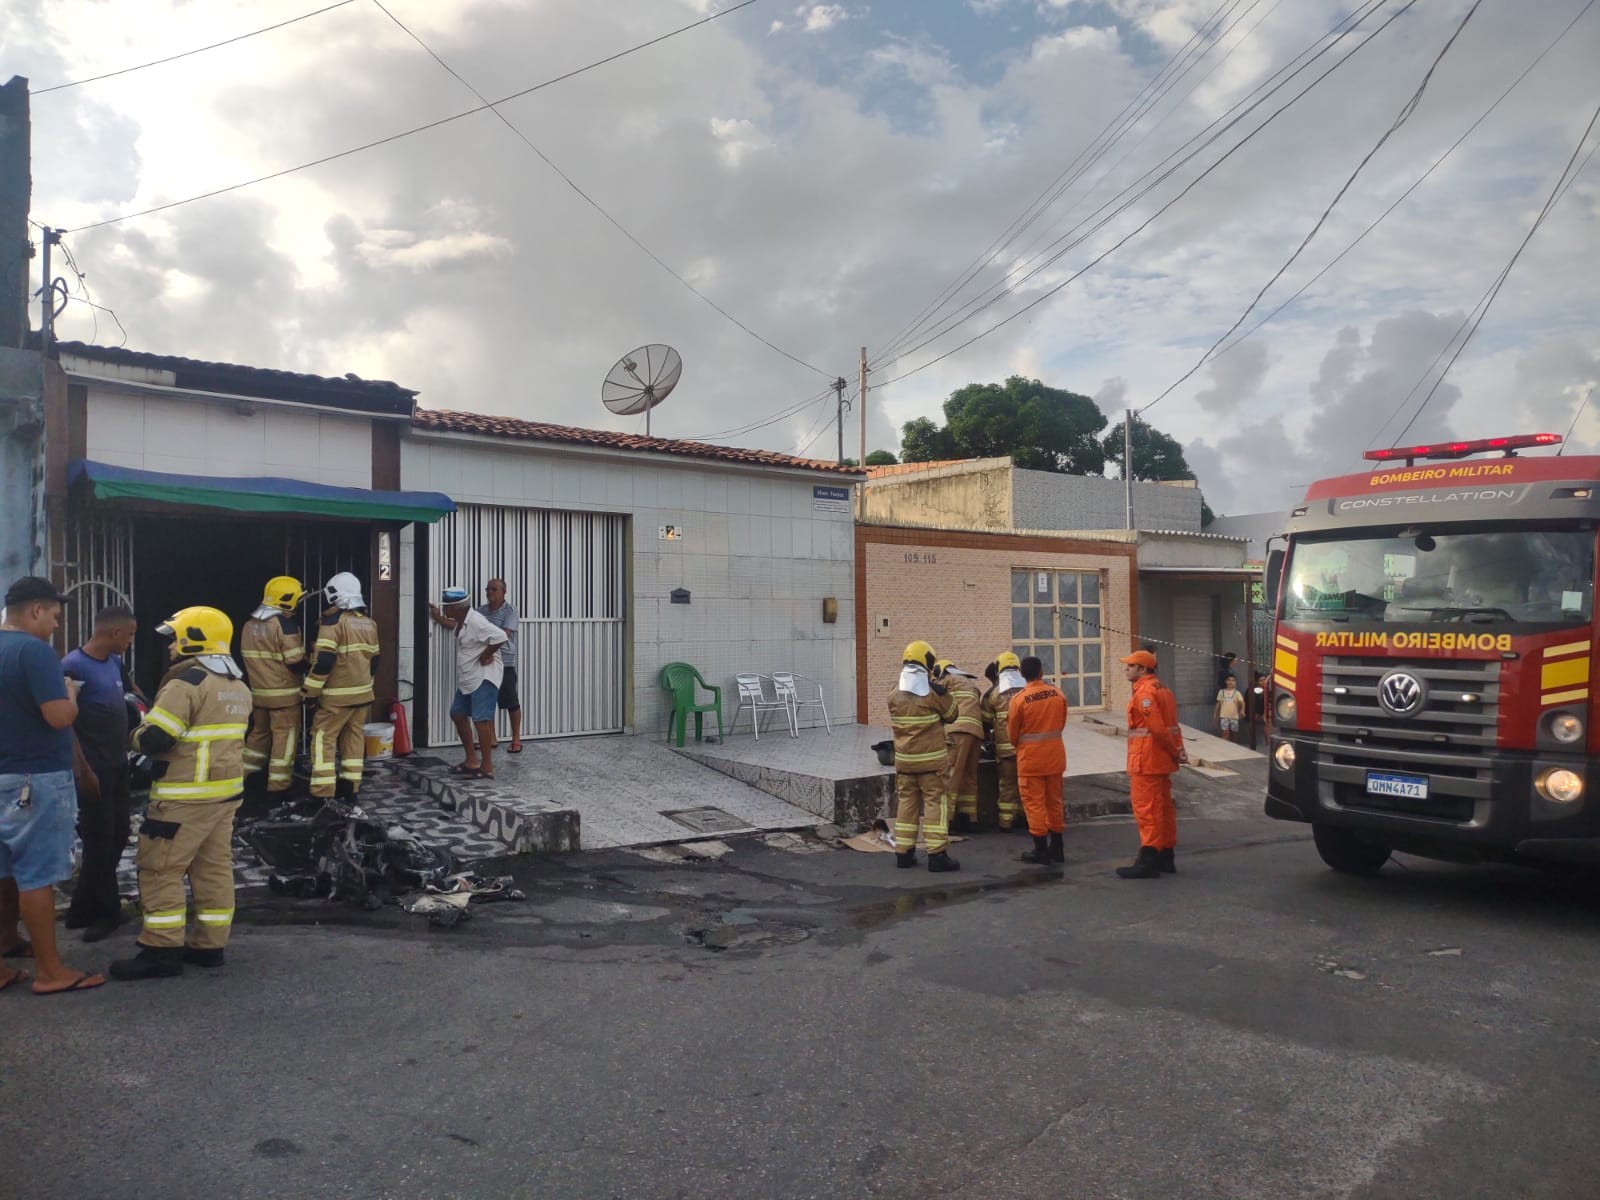 Quatro pessoas ficam feridas após motocicleta elétrica pegar fogo dentro de residência em Aracaju 